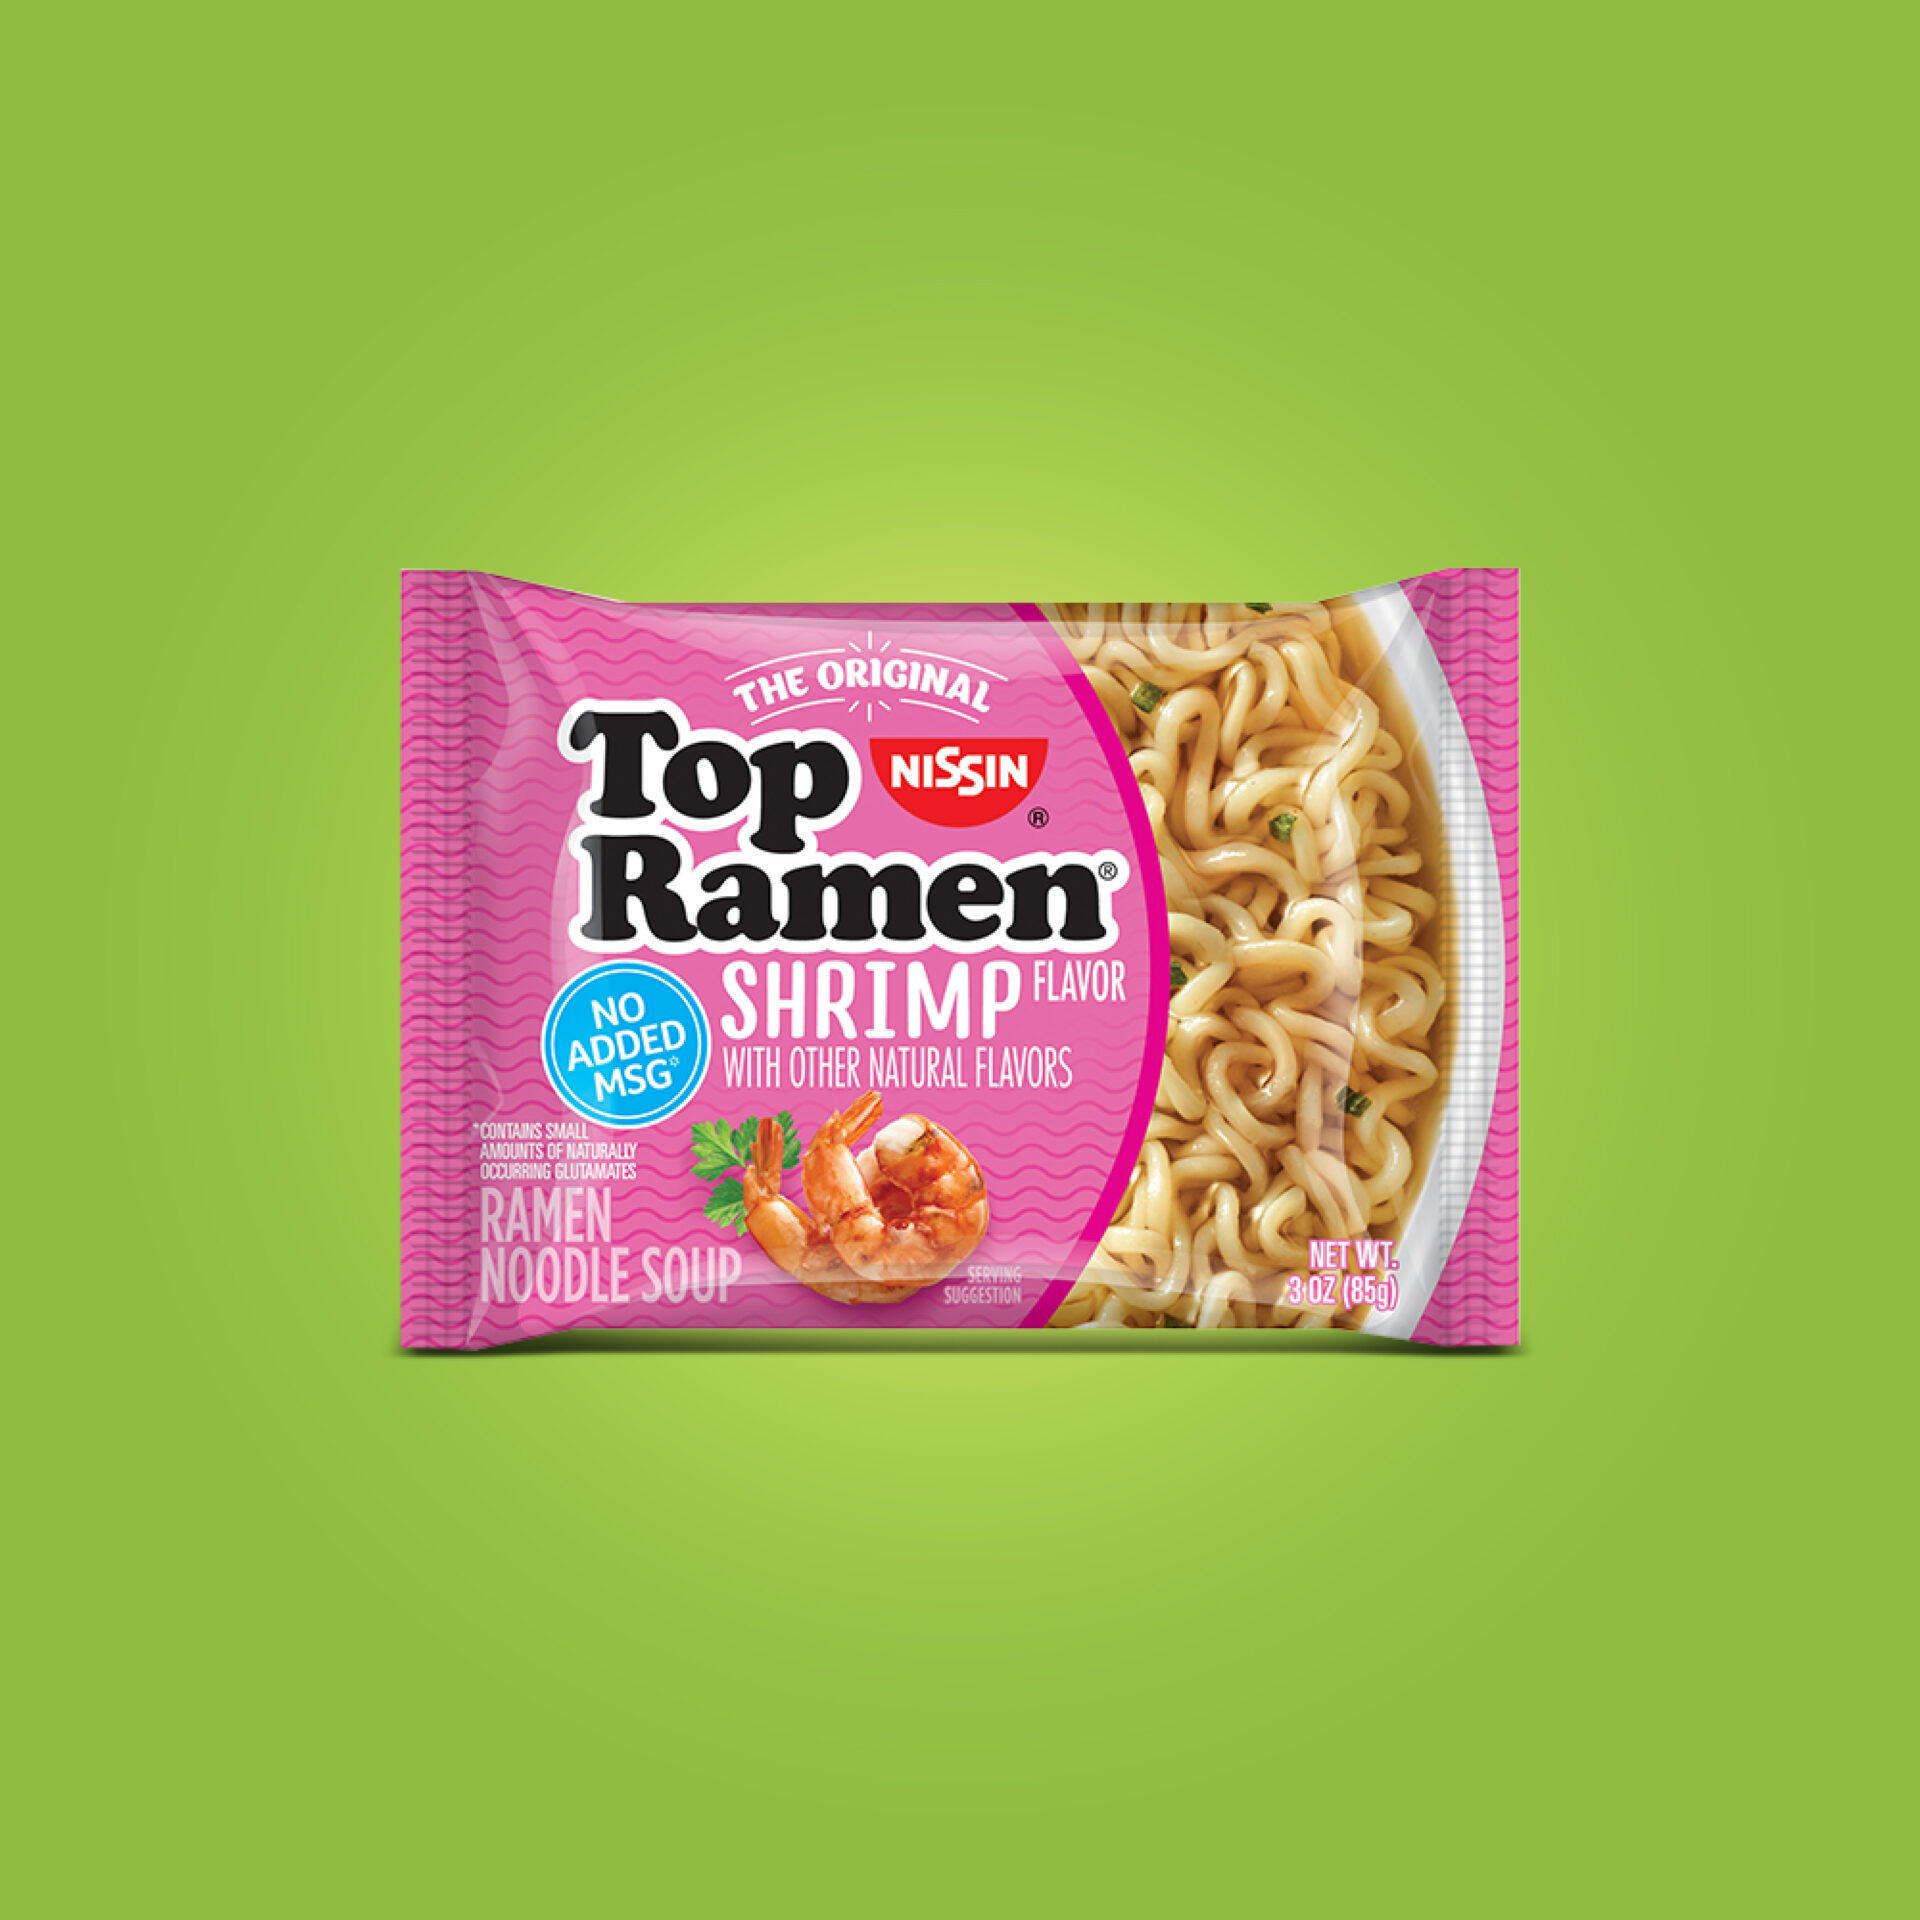 Top Ramen Shrimp - Nissin Food